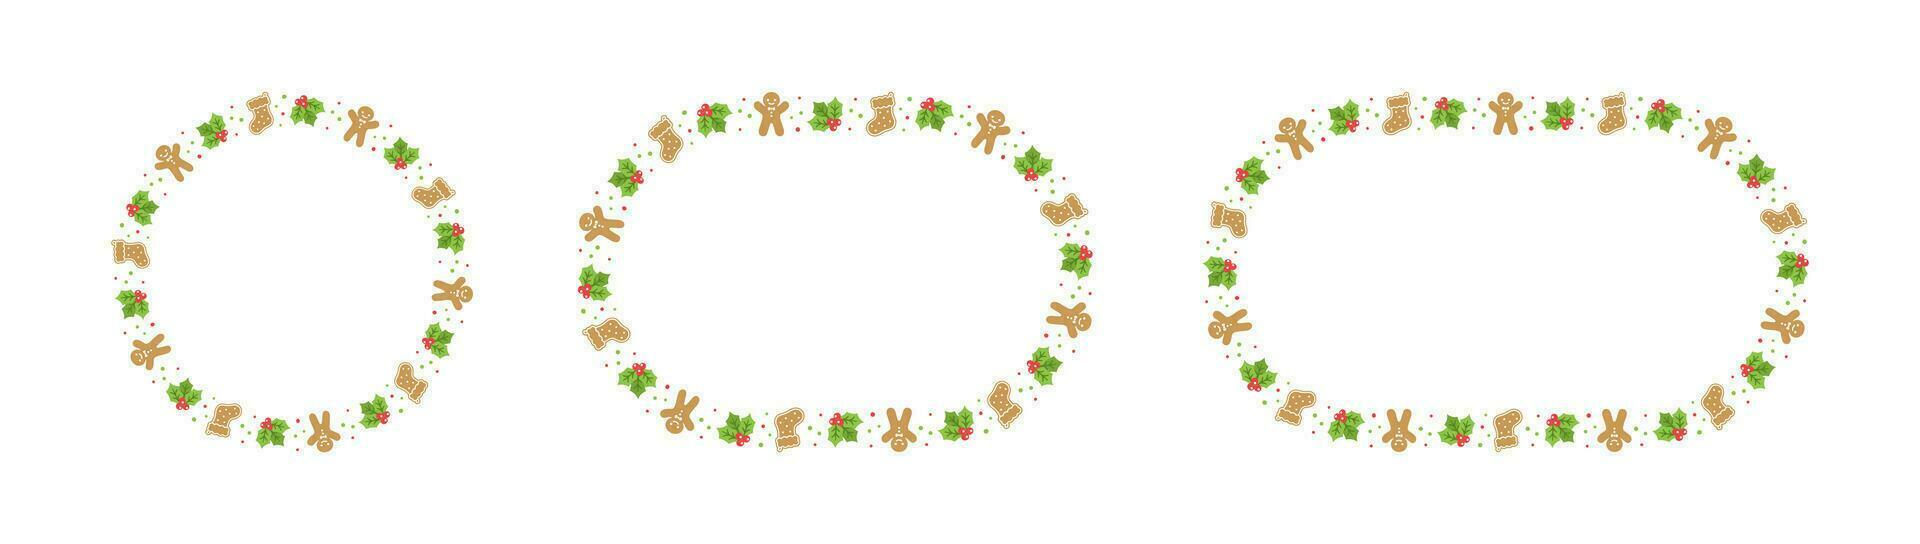 redondo pan de jengibre galletas marco frontera colocar, Navidad invierno fiesta gráficos. hecho en casa dulces patrón, tarjeta y social medios de comunicación enviar modelo en blanco antecedentes. aislado vector ilustración.